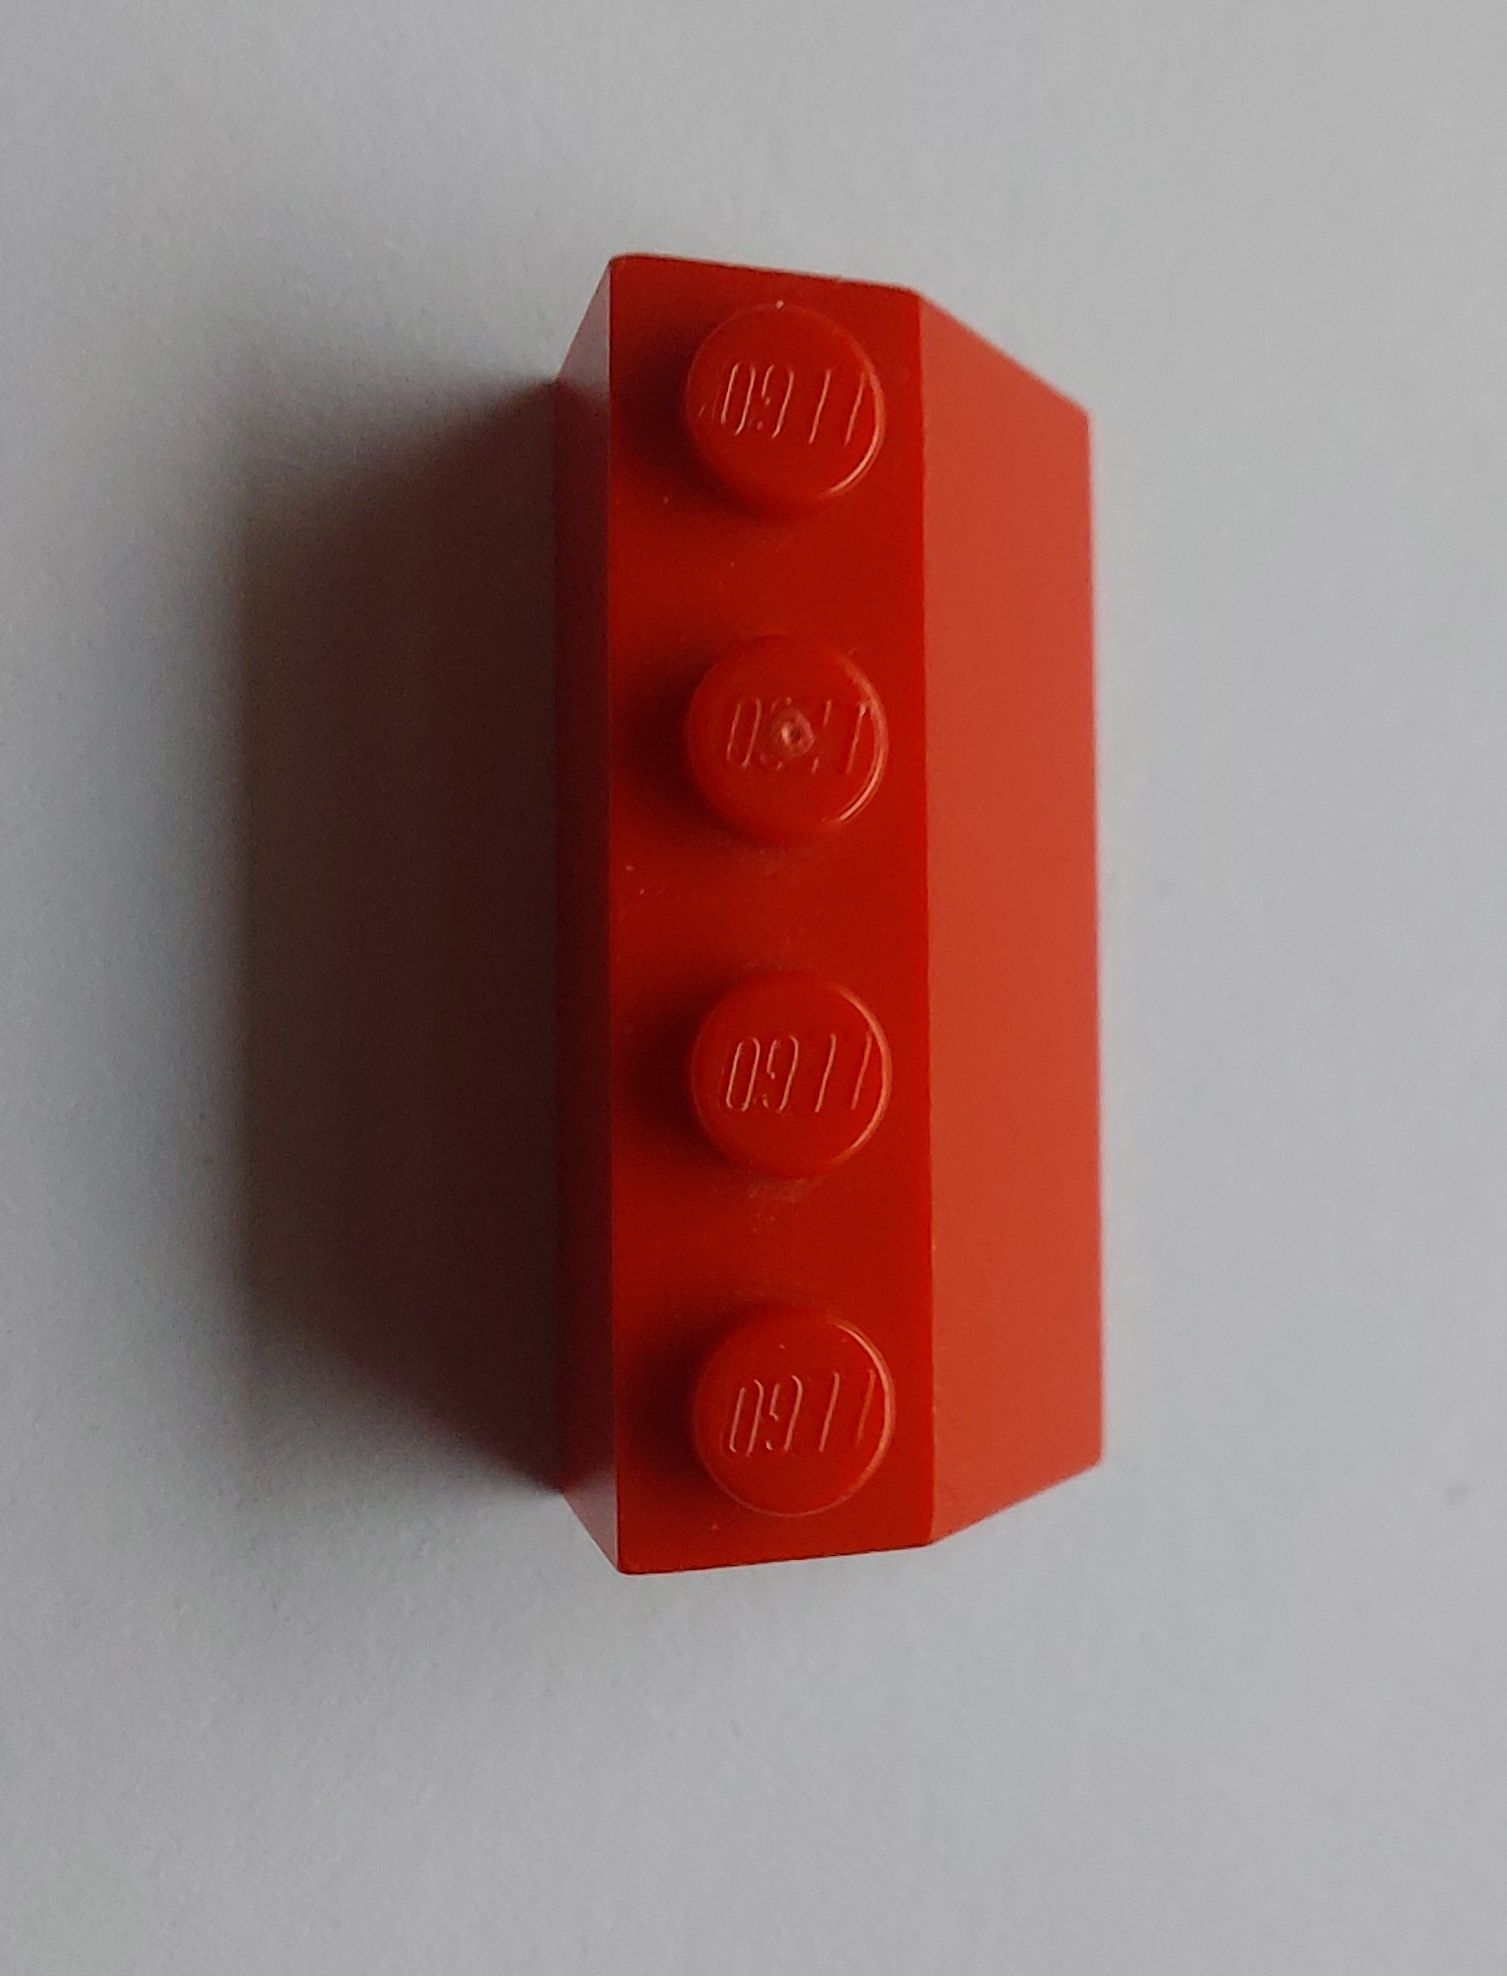 Lego elementy 3037 skos 2×4 czerwony